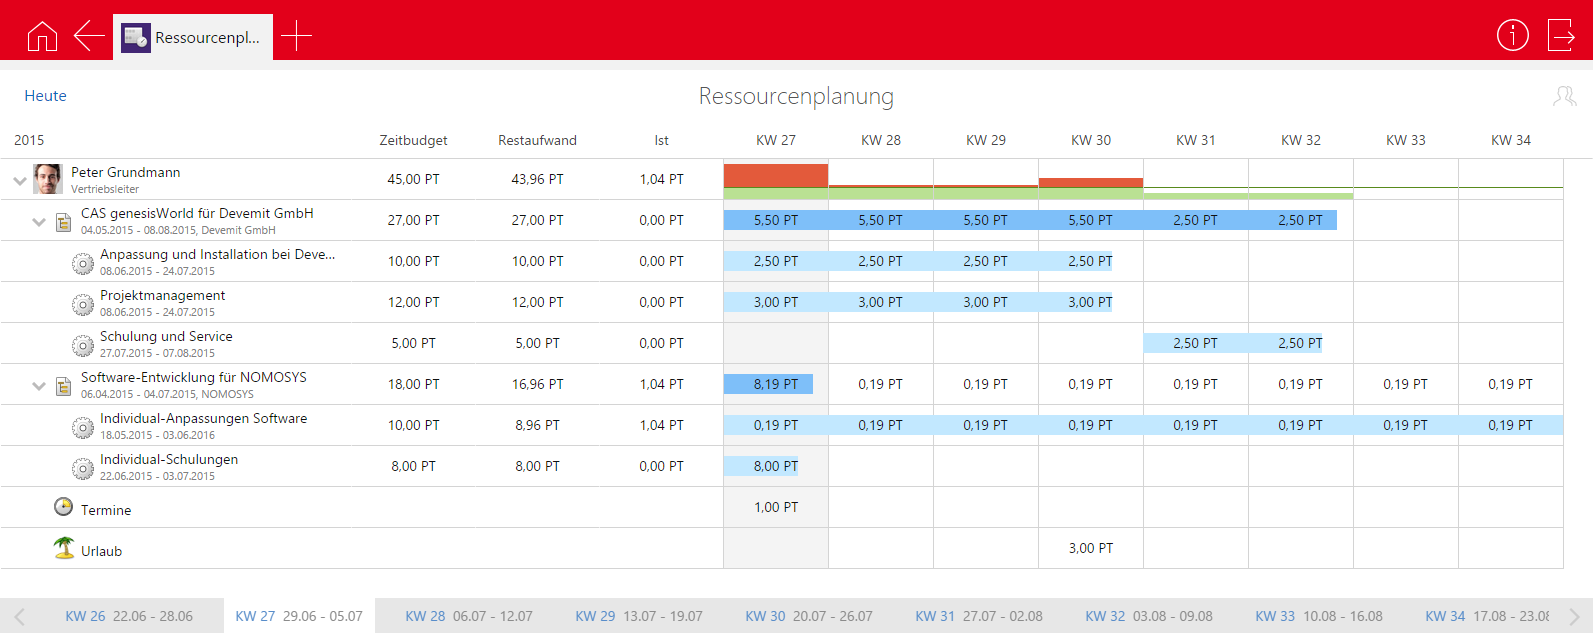 Timeclient online Projektmanagement 7.4 Ressourcenplanung Die App Ressourcenplanung bietet eine grafische Übersicht über Ihre wöchentliche Auslastung durch Projekte, Termine und Urlaub.